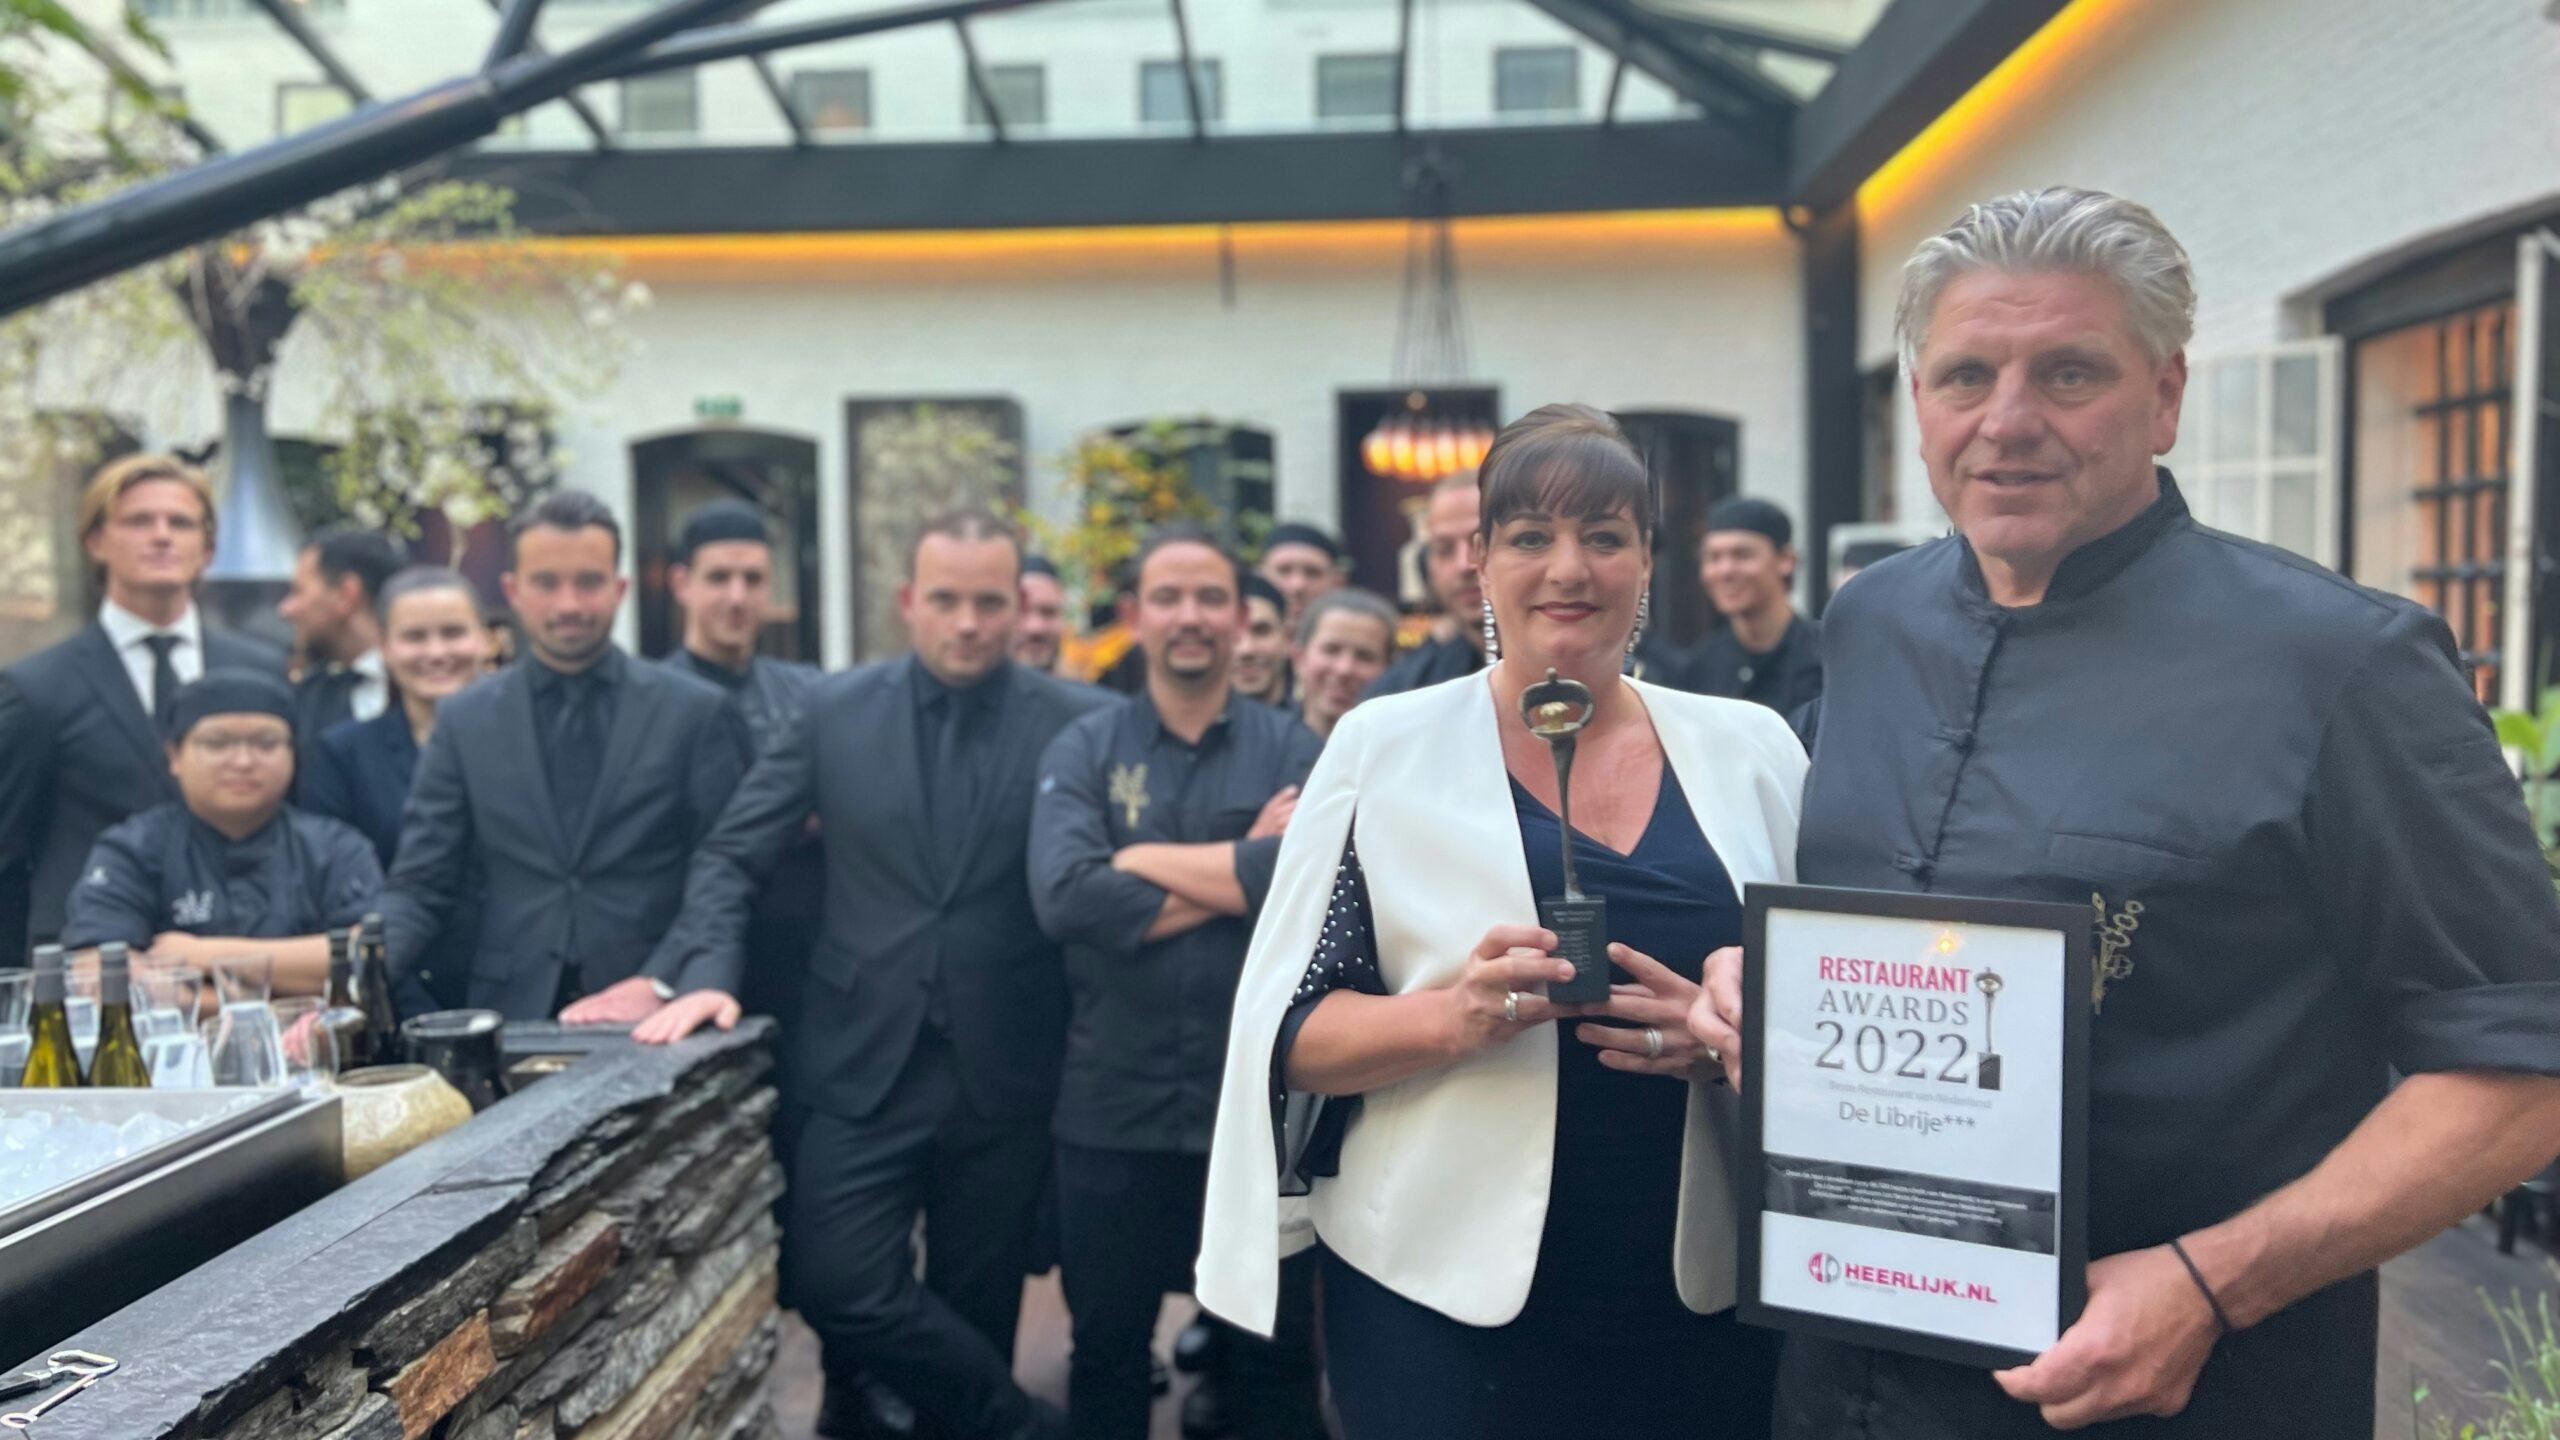 Restaurant Awards: De Librije wint voor de zevende keer